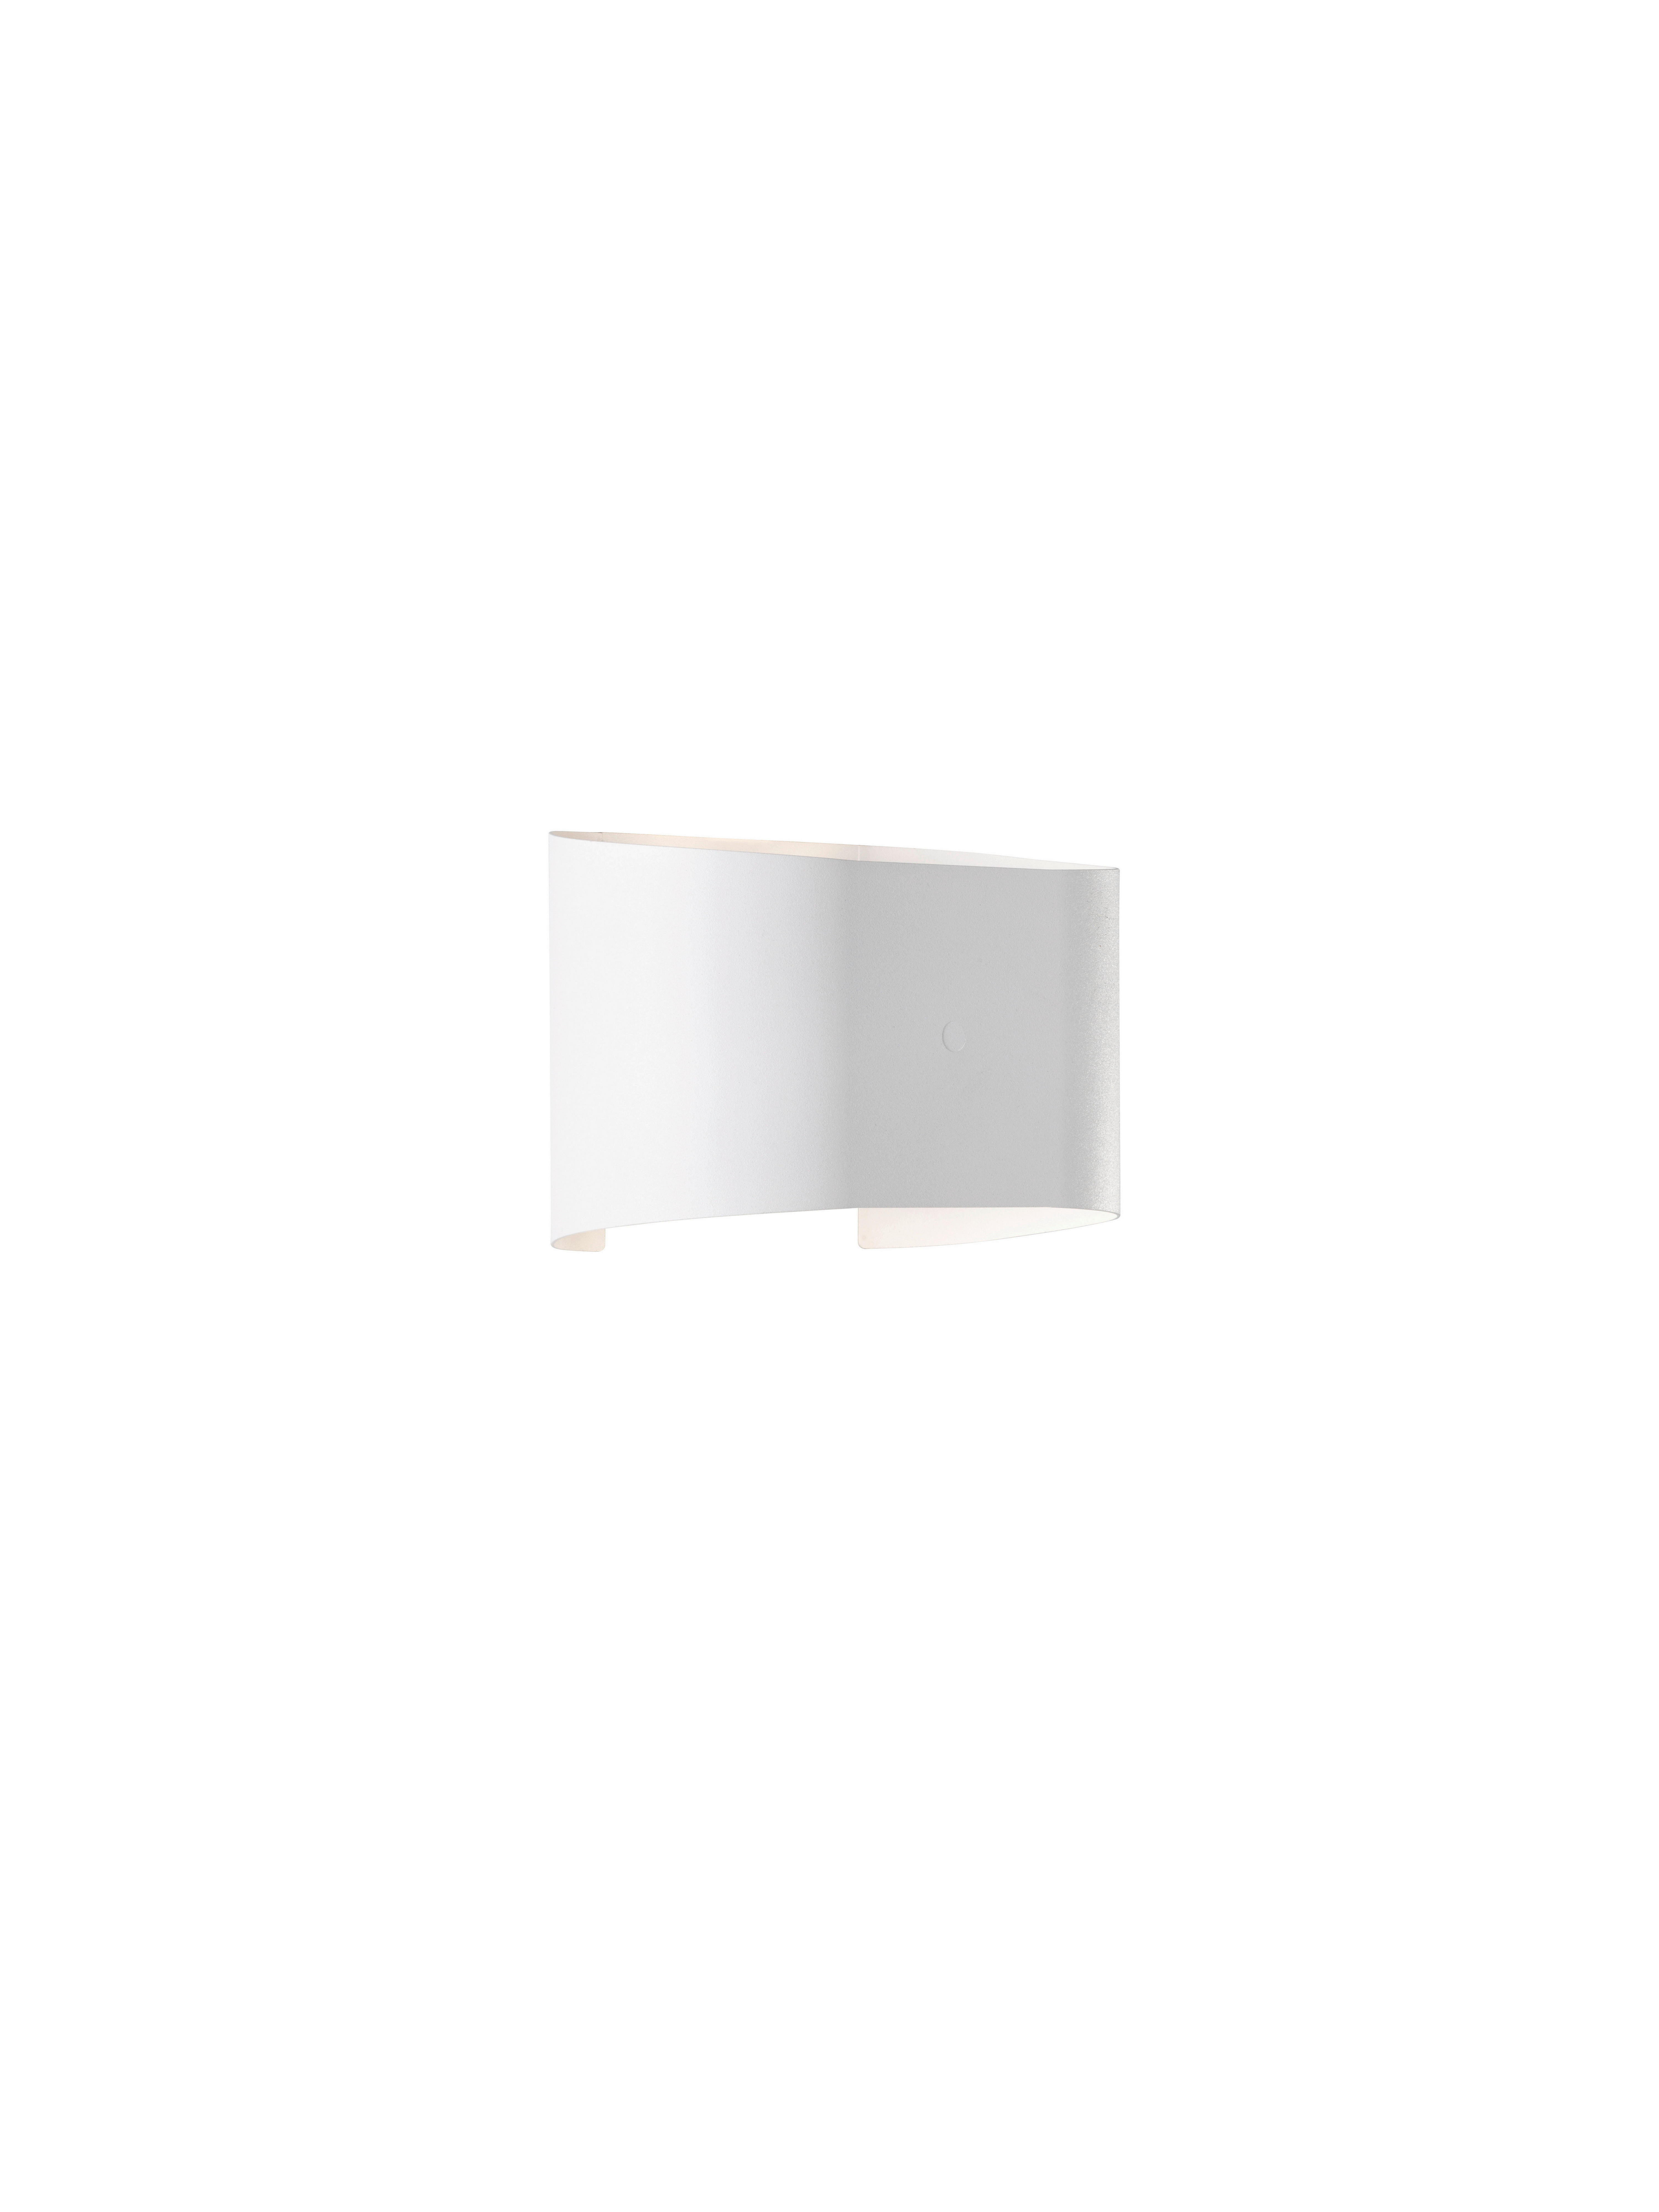 LED-WANDLEUCHTE Wall 18/12 cm   - Weiß, Design, Metall (18/12cm) - Fischer & Honsel